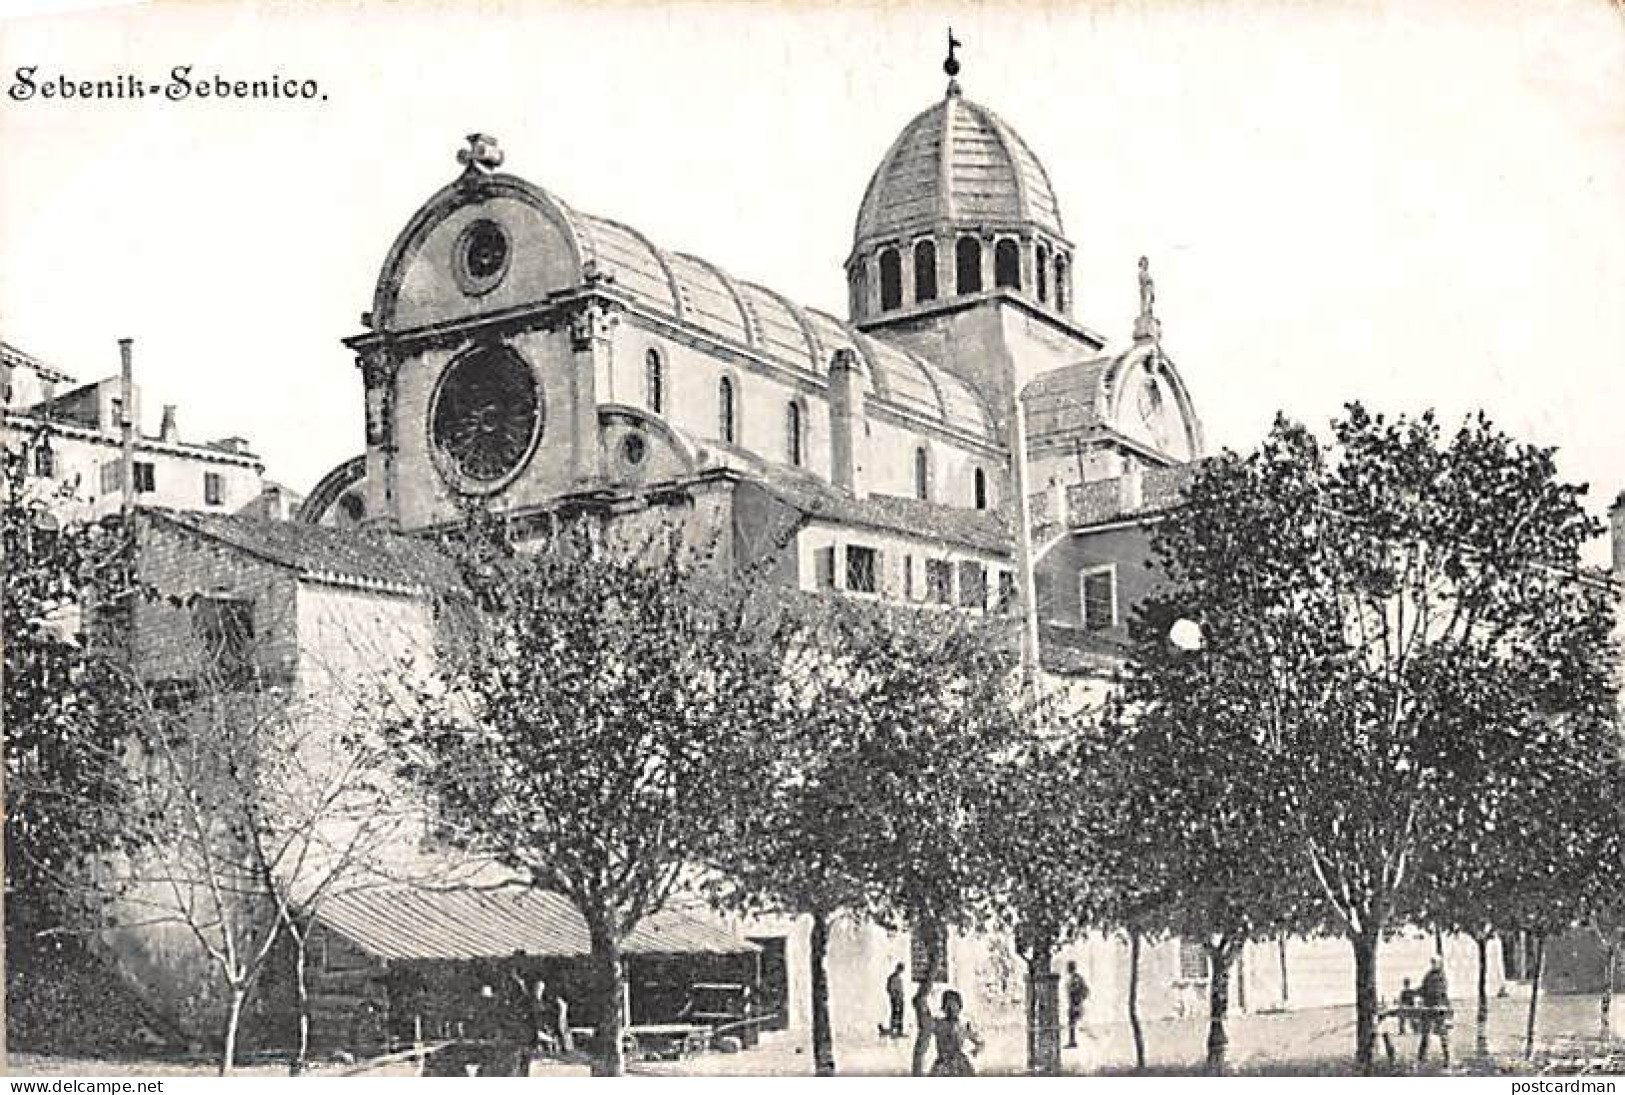 CROATIA - Sibenik (Sebenico) - Il Duomo 2 - Croatie